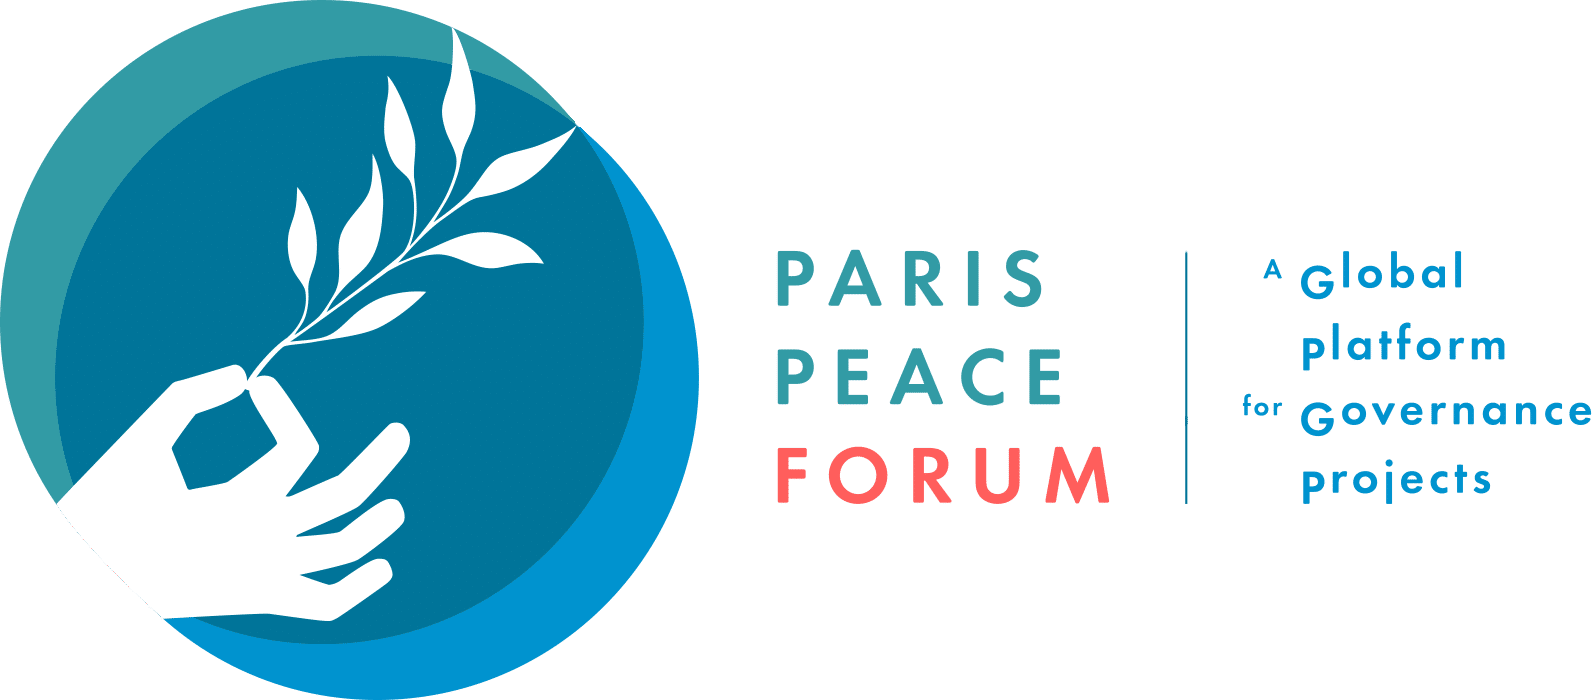 Paris 2018 Logo - Paris Peace Forum / A Global Platform for Governance Projects